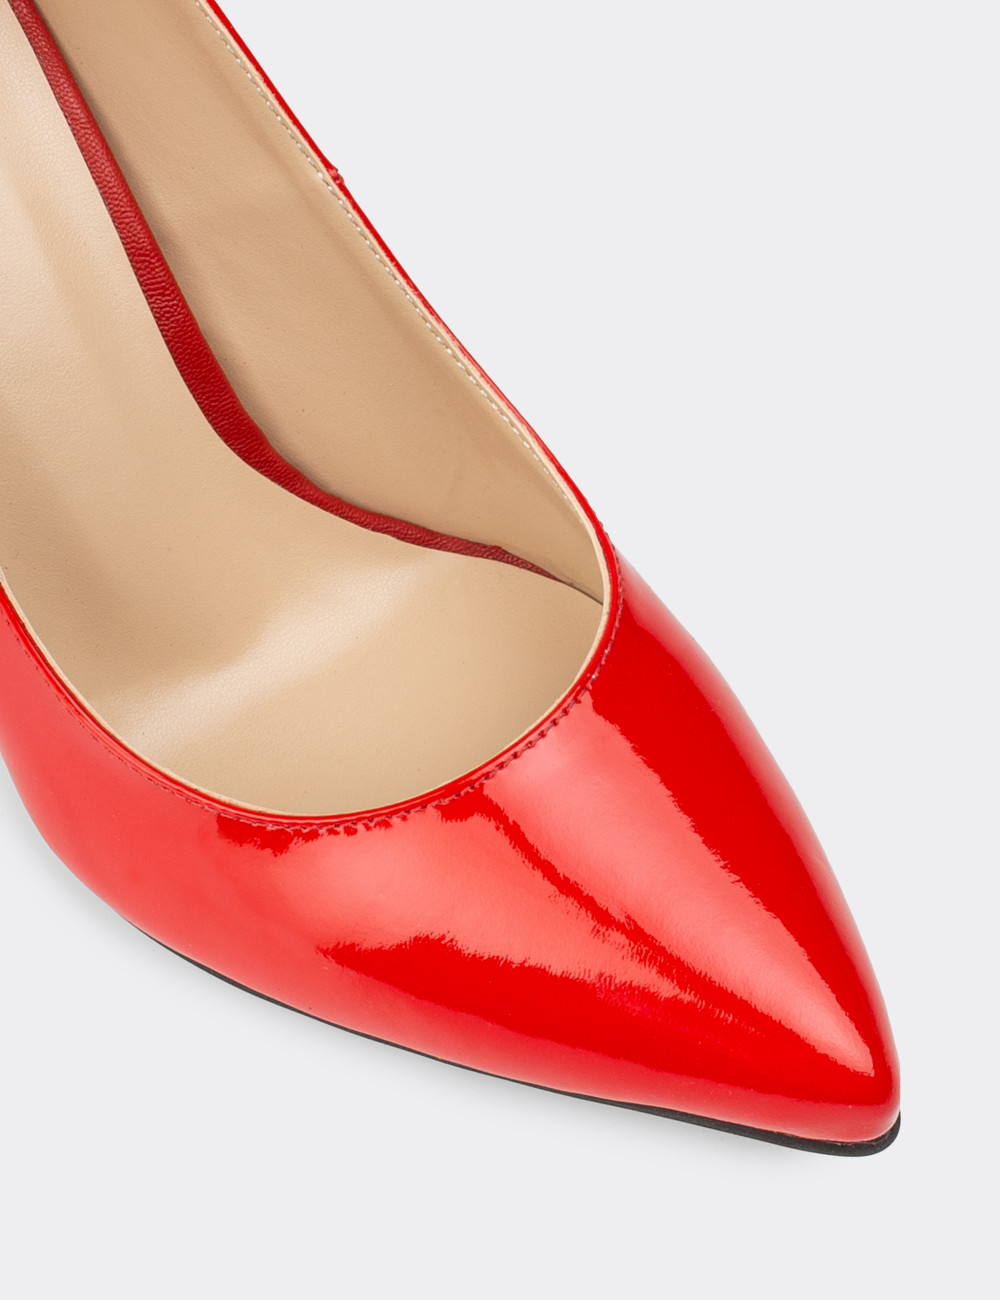 Kırmızı Topuklu Kadın Ayakkabı - 02029ZKRMM04